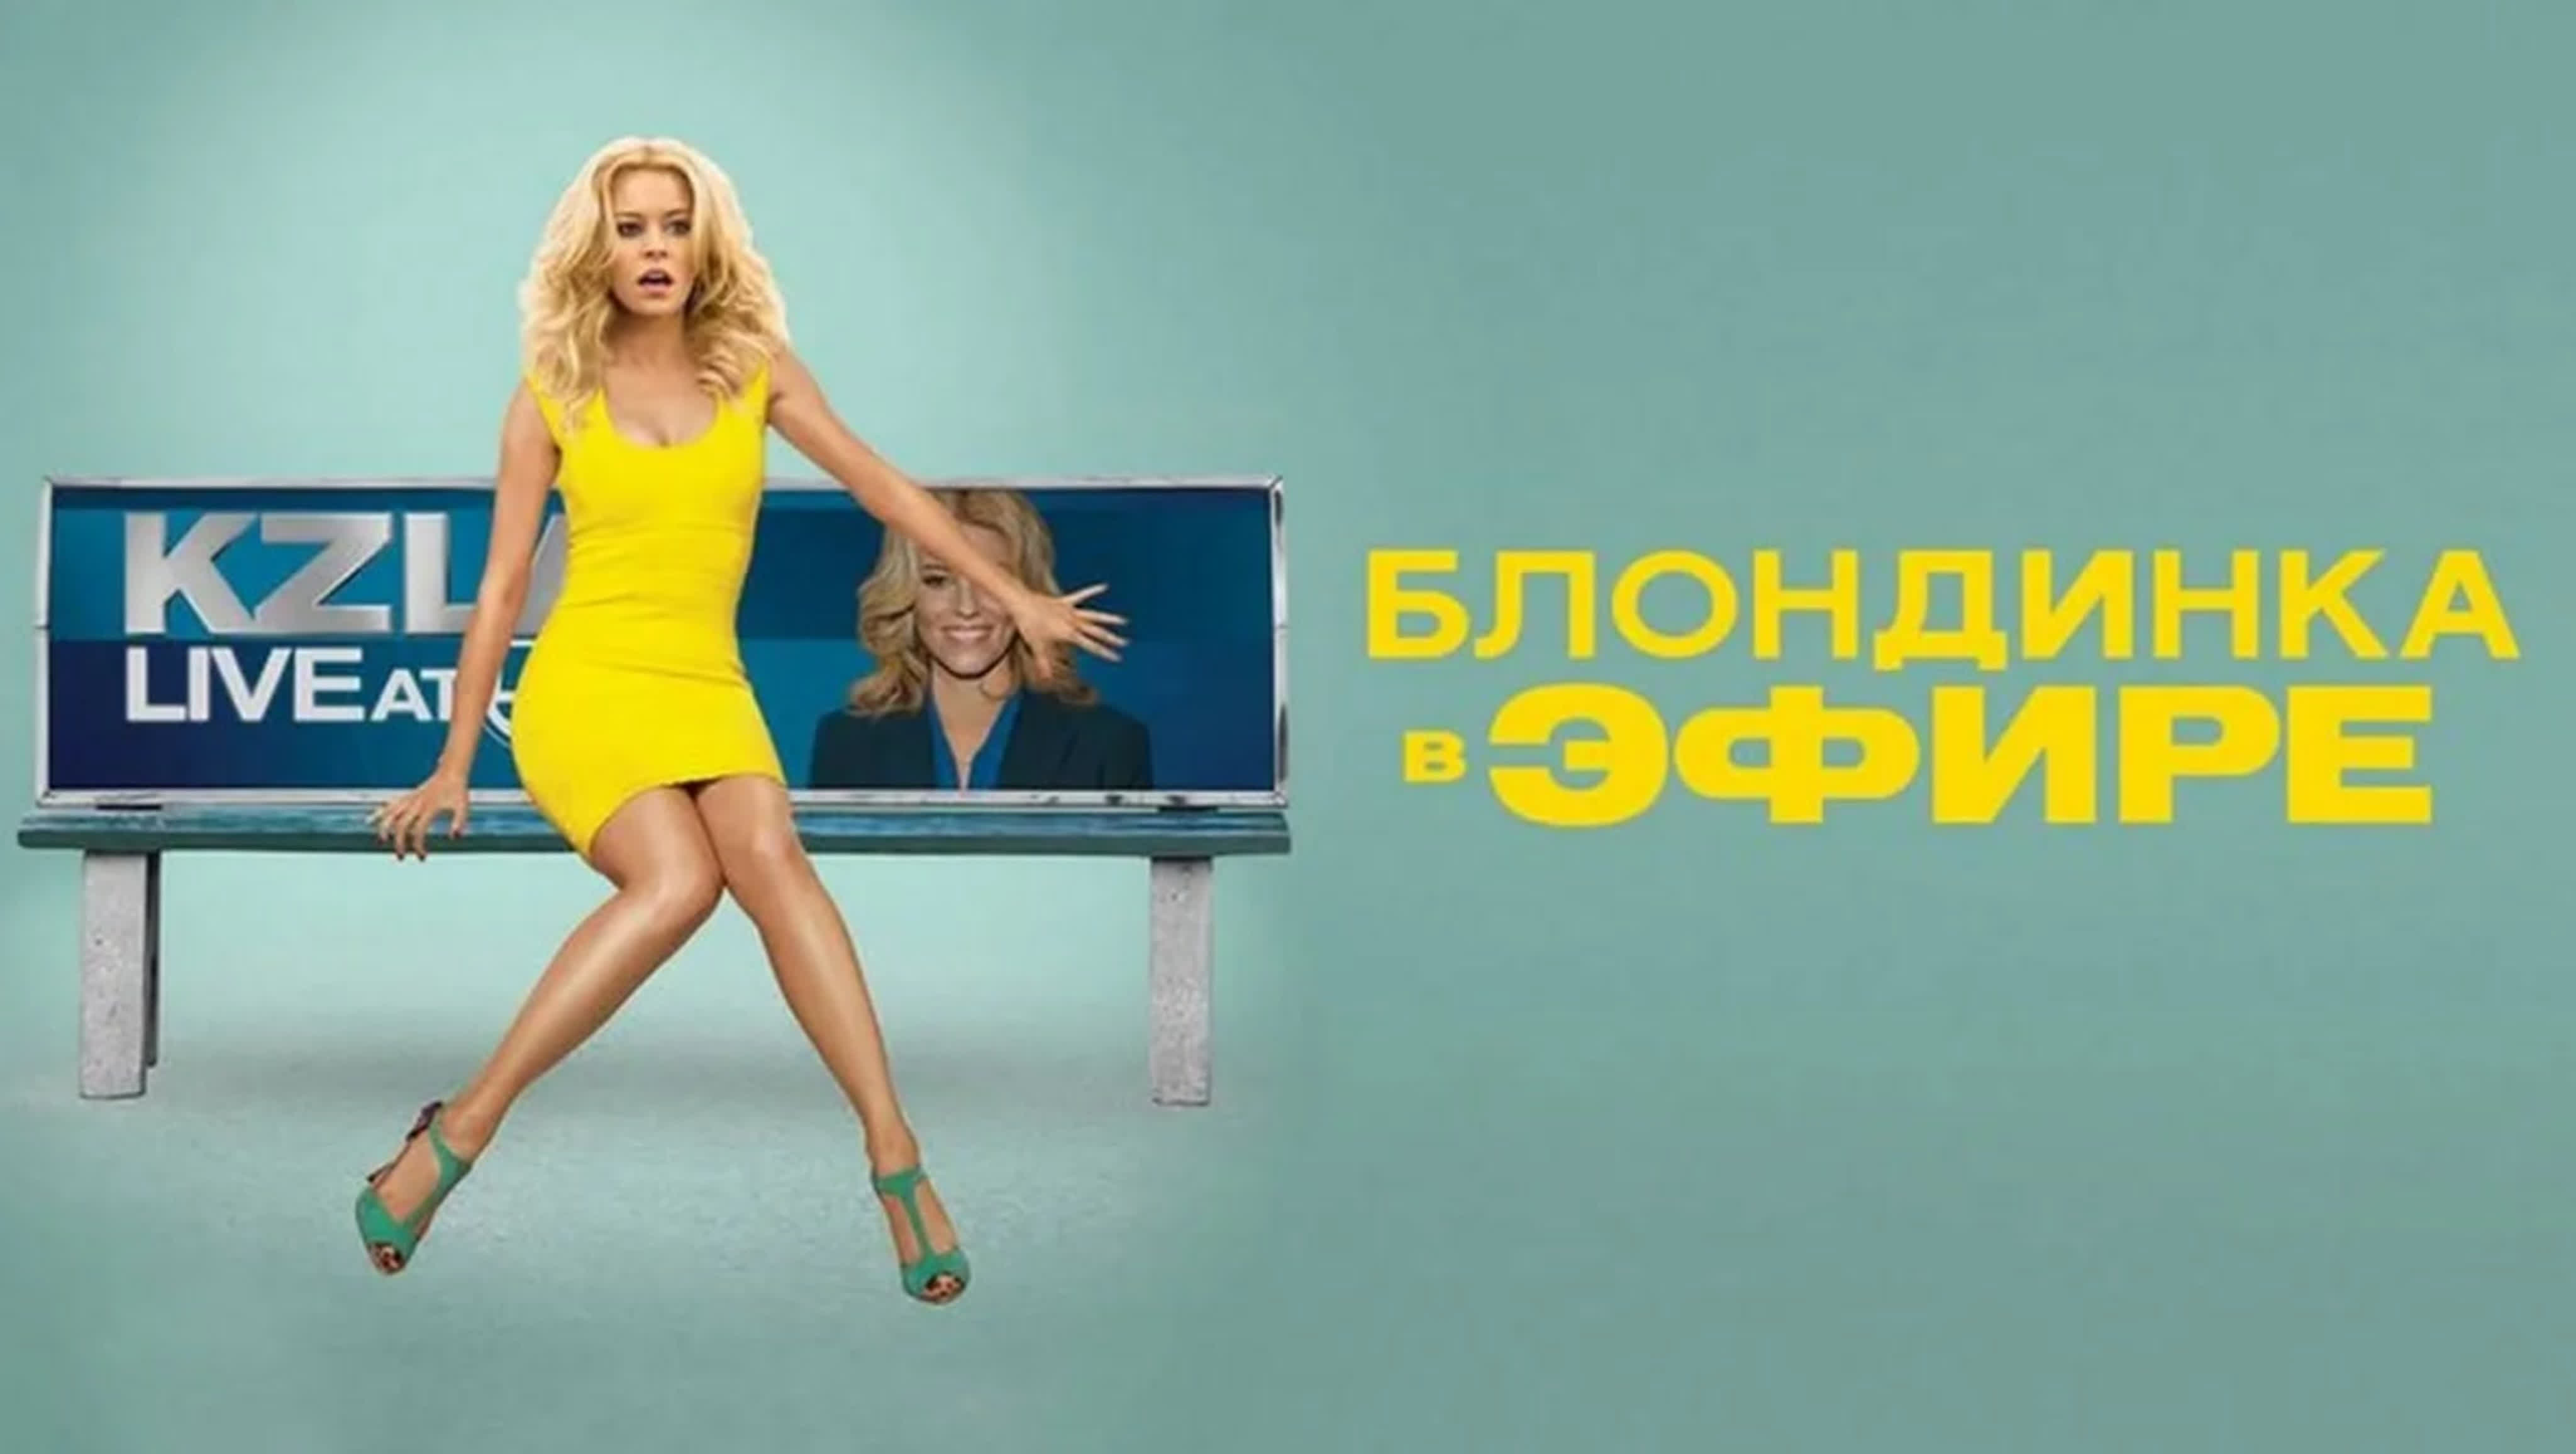 Блондинка в эфире (2014) watch online